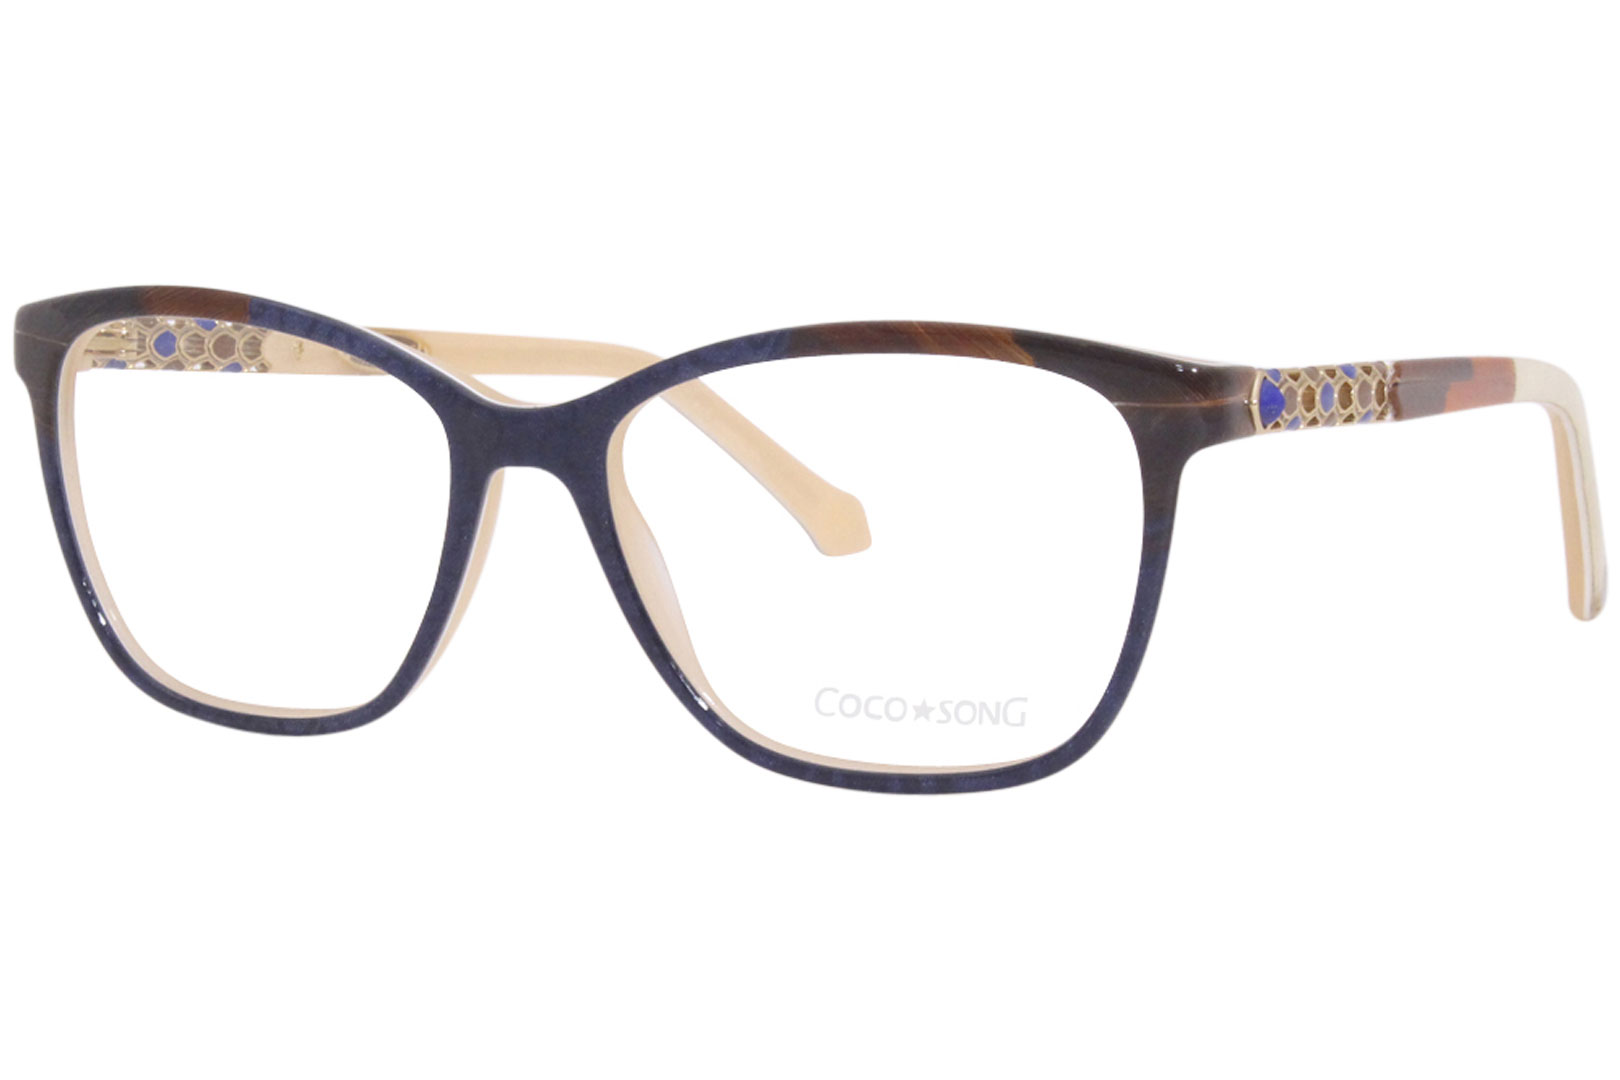 Coco Song Good-Feeling CV202 Eyeglasses Frame Women's Full Rim Cat Eye